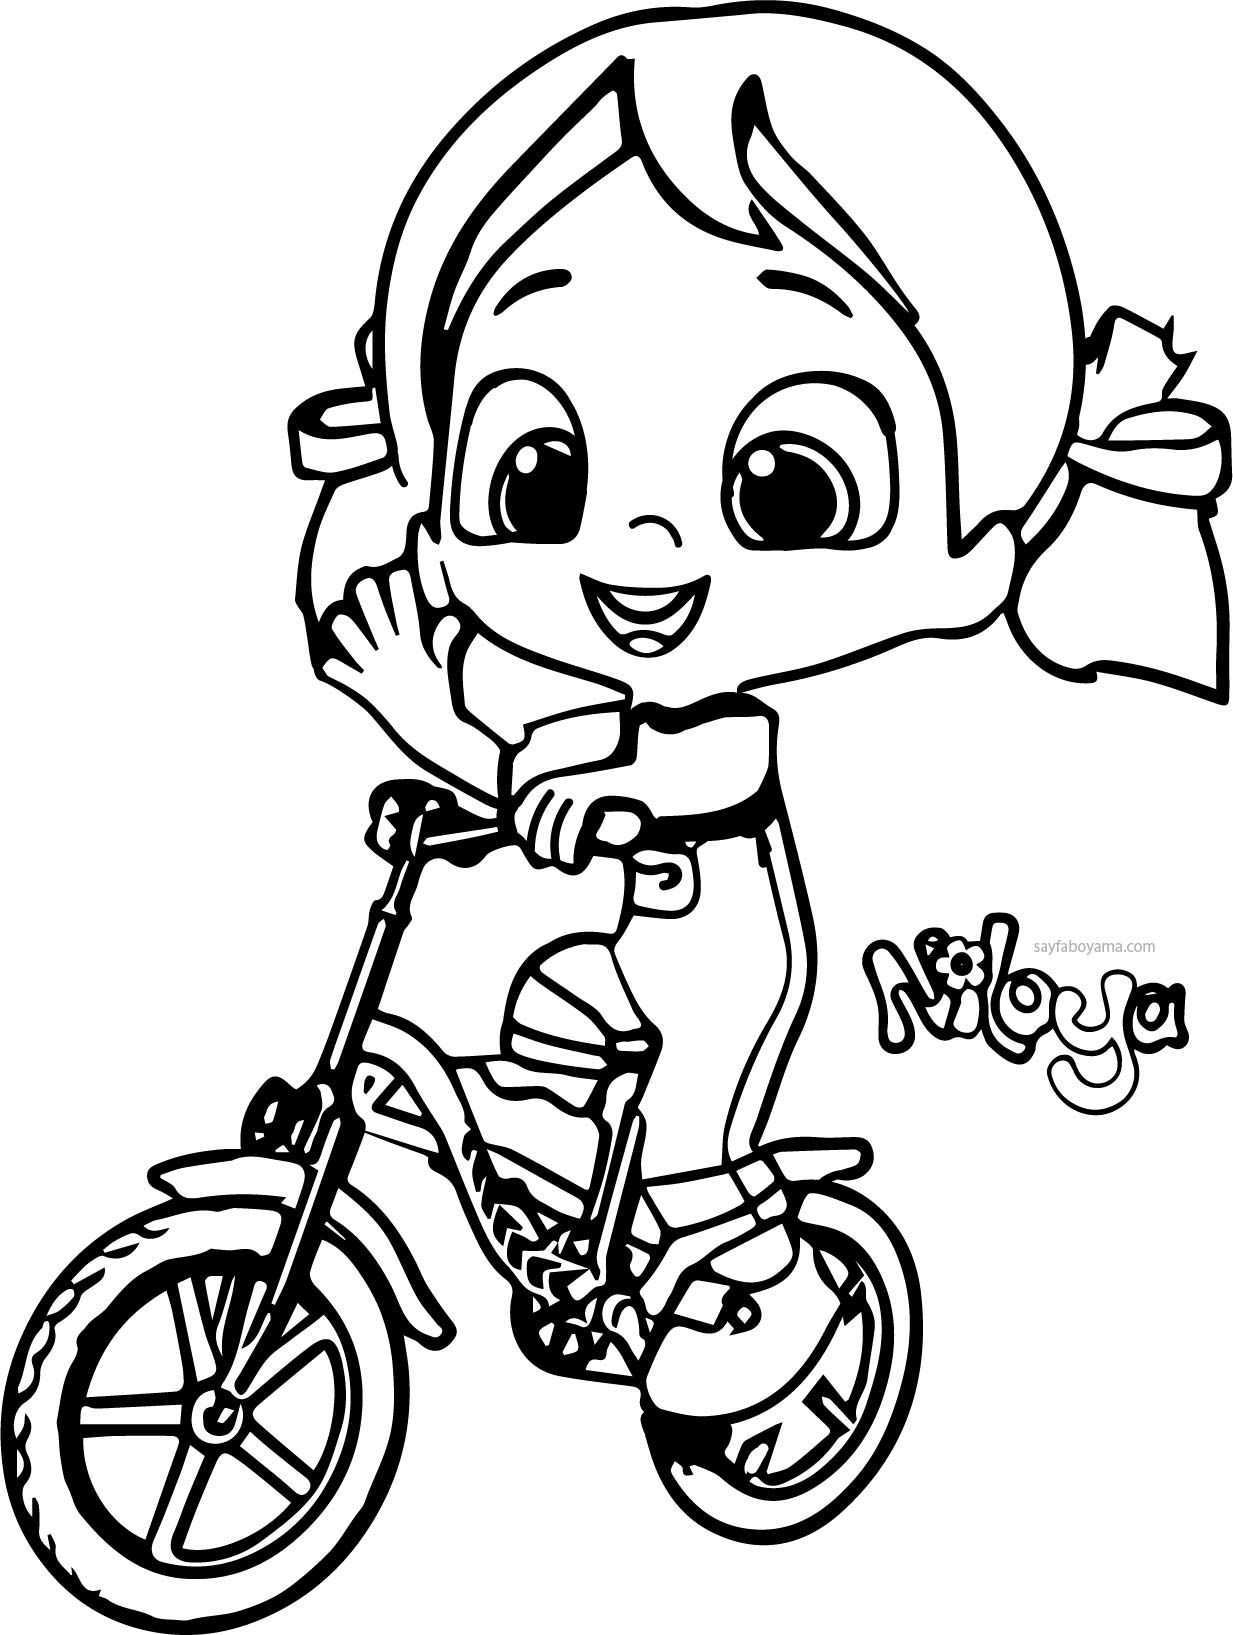 Niloya Bisiklet Kullaniyor Boyama Sayfasi Sayfa Boyama Boyama Sayfalari Boyama Kagidi